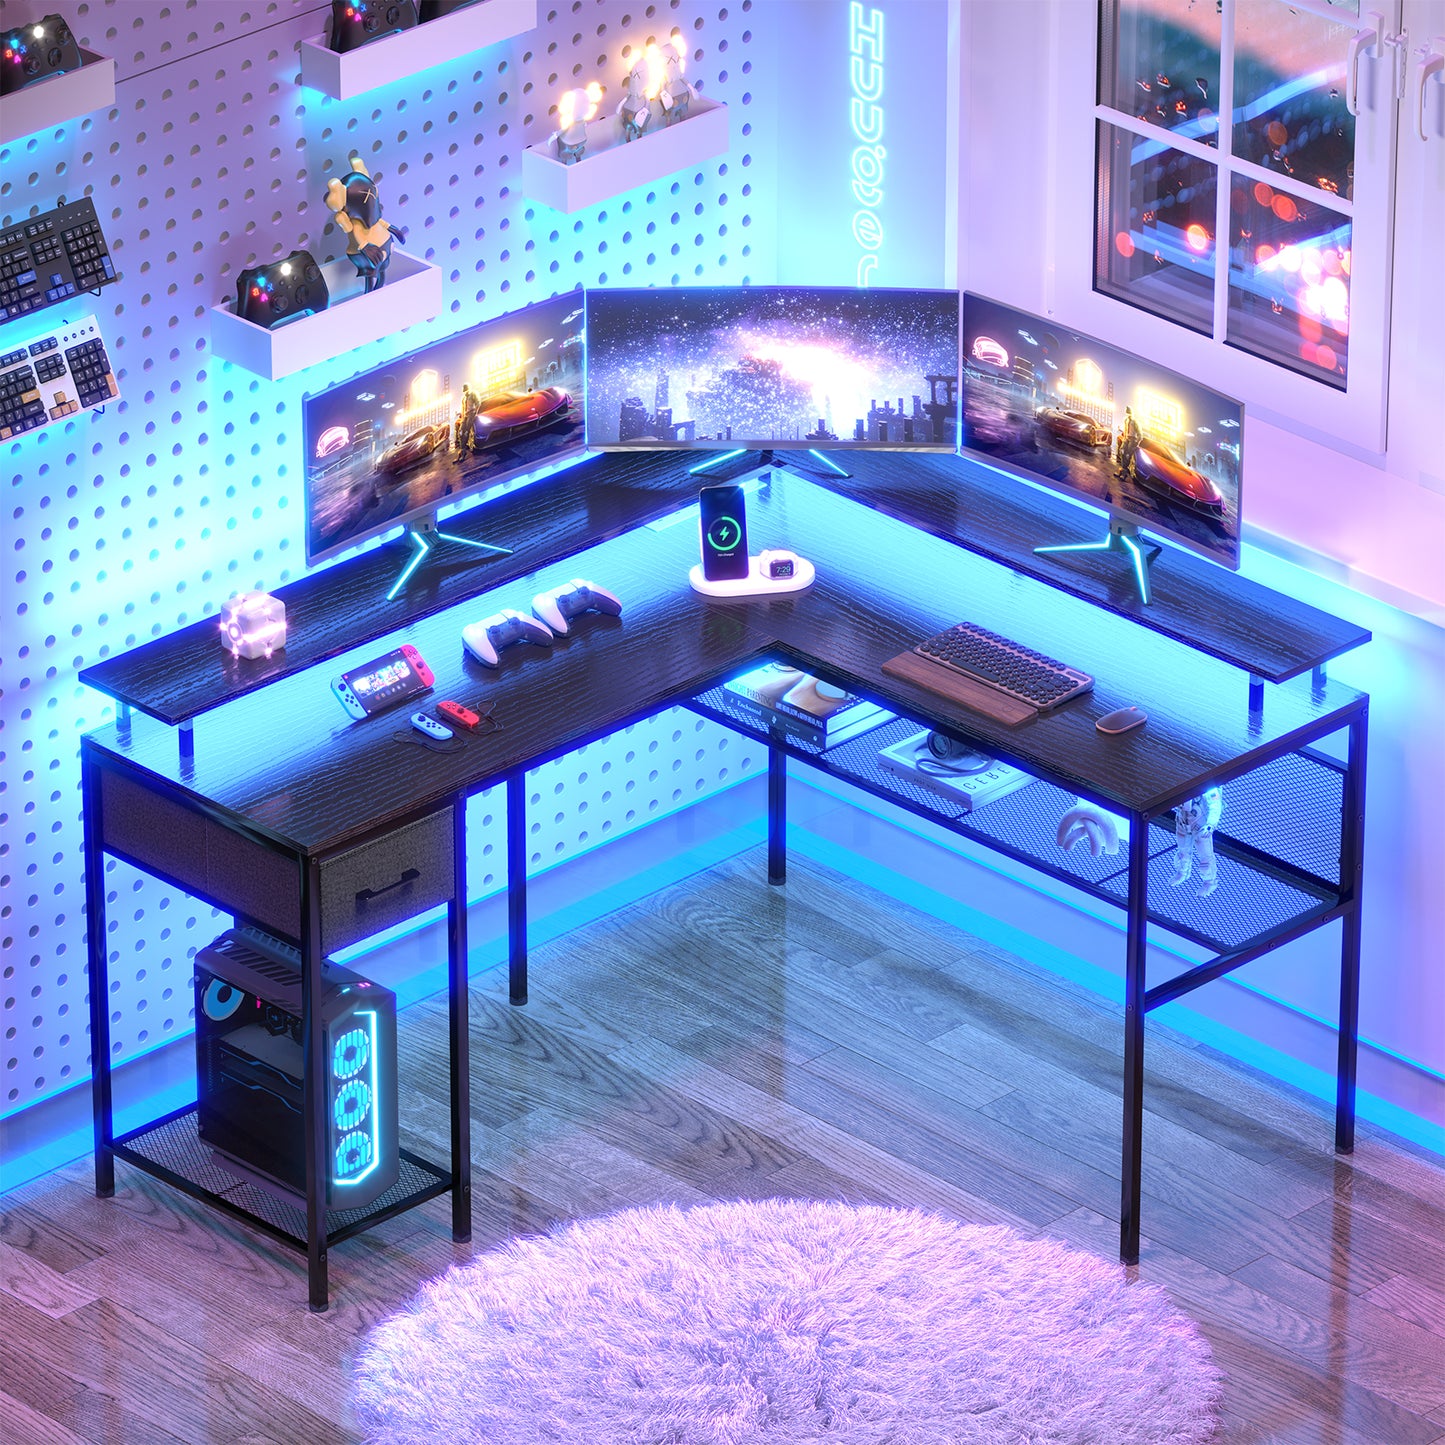 Huuger L Shaped Desk Gaming Desk with LED Lights & Power Outlets, Computer Desk with Storage Shelves, Corner Desk Home Office Desk, Black